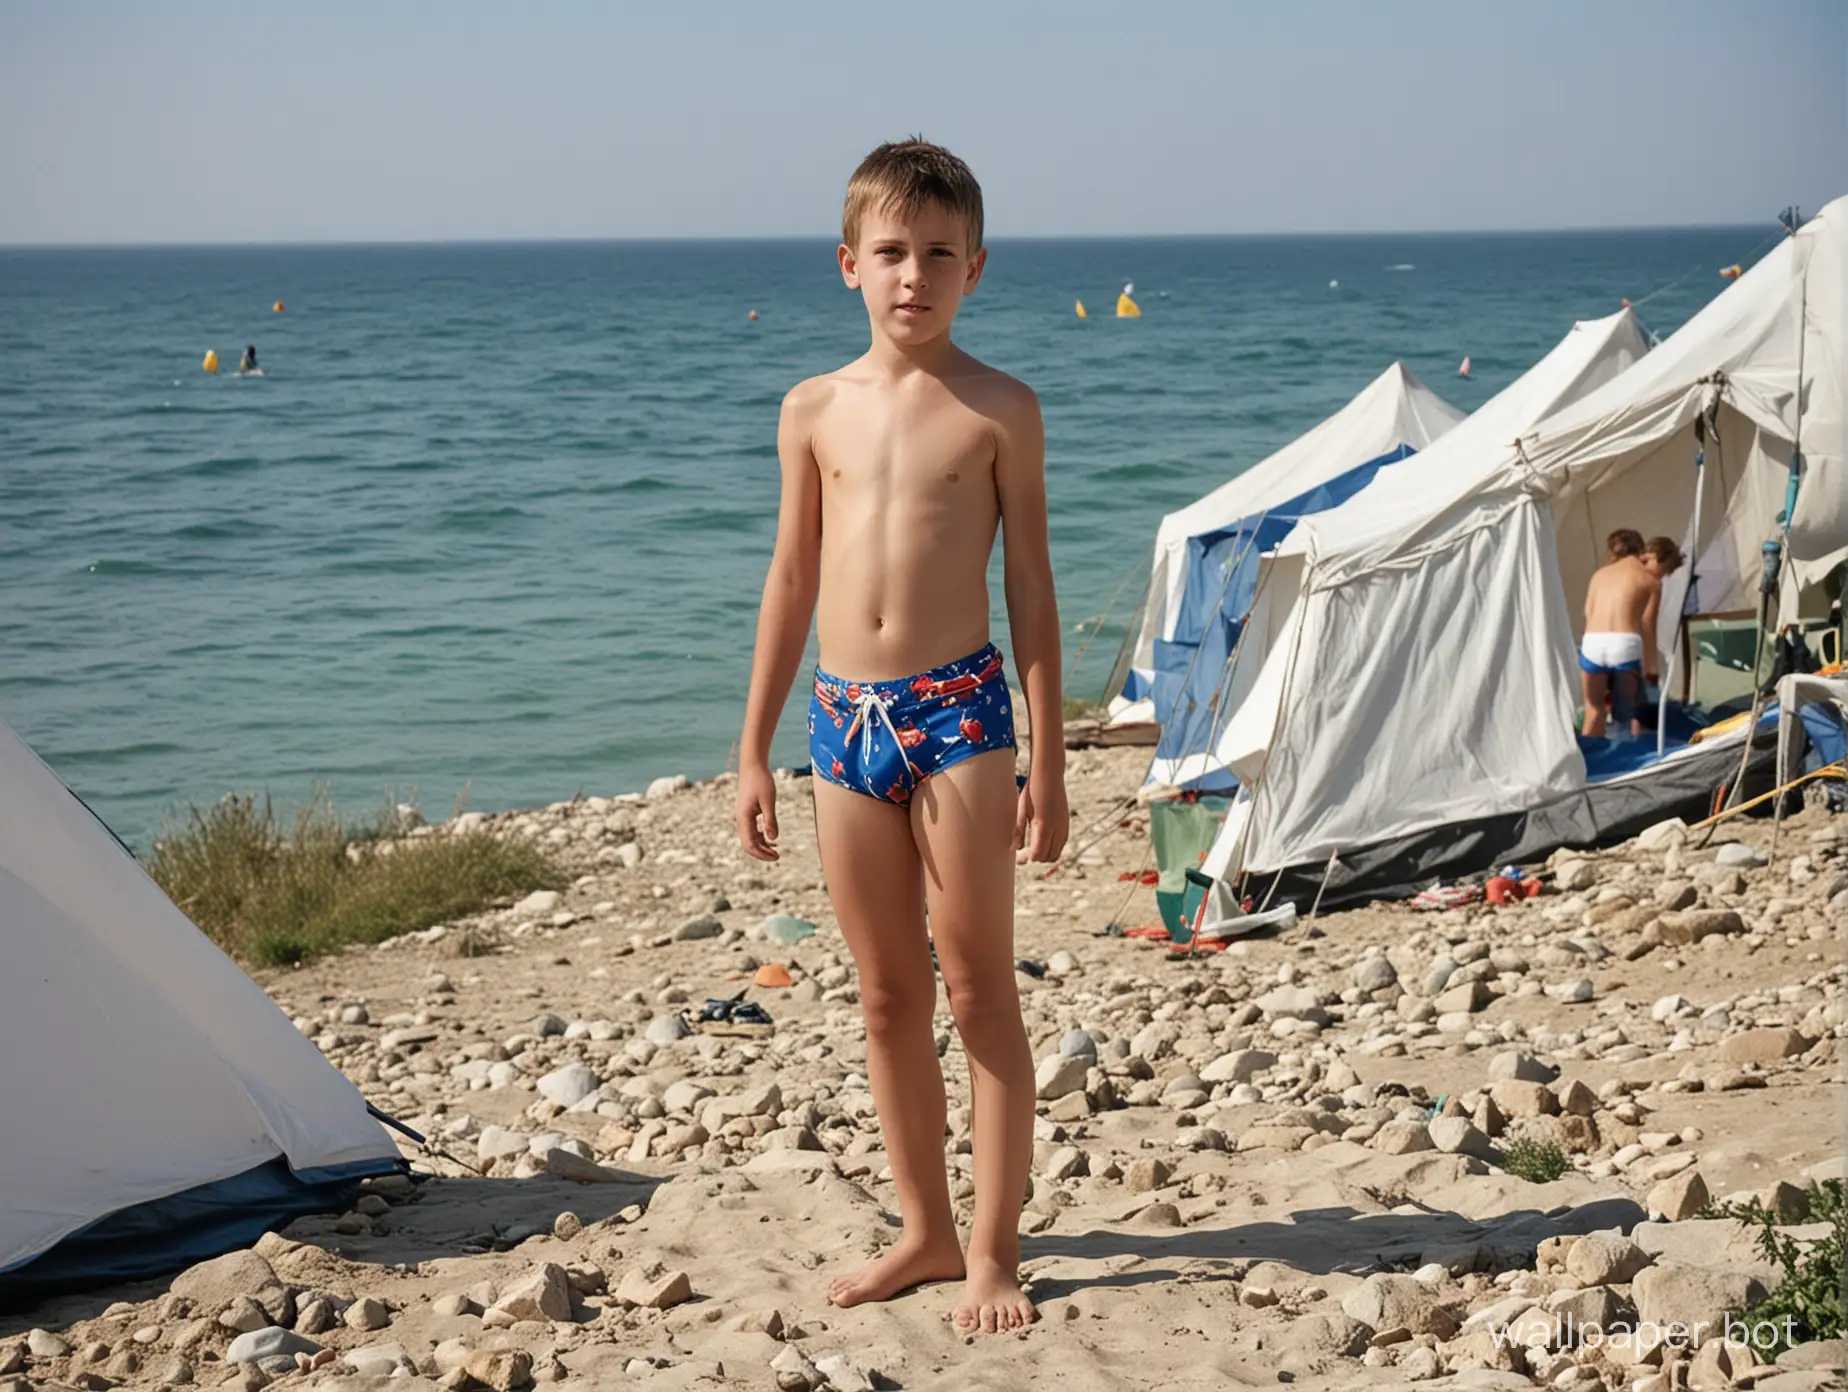 Крым, палатка, море вдалеке, палатки вдалеке, мальчик 13 лет в плавках, поясное изображение, кокетство, люди